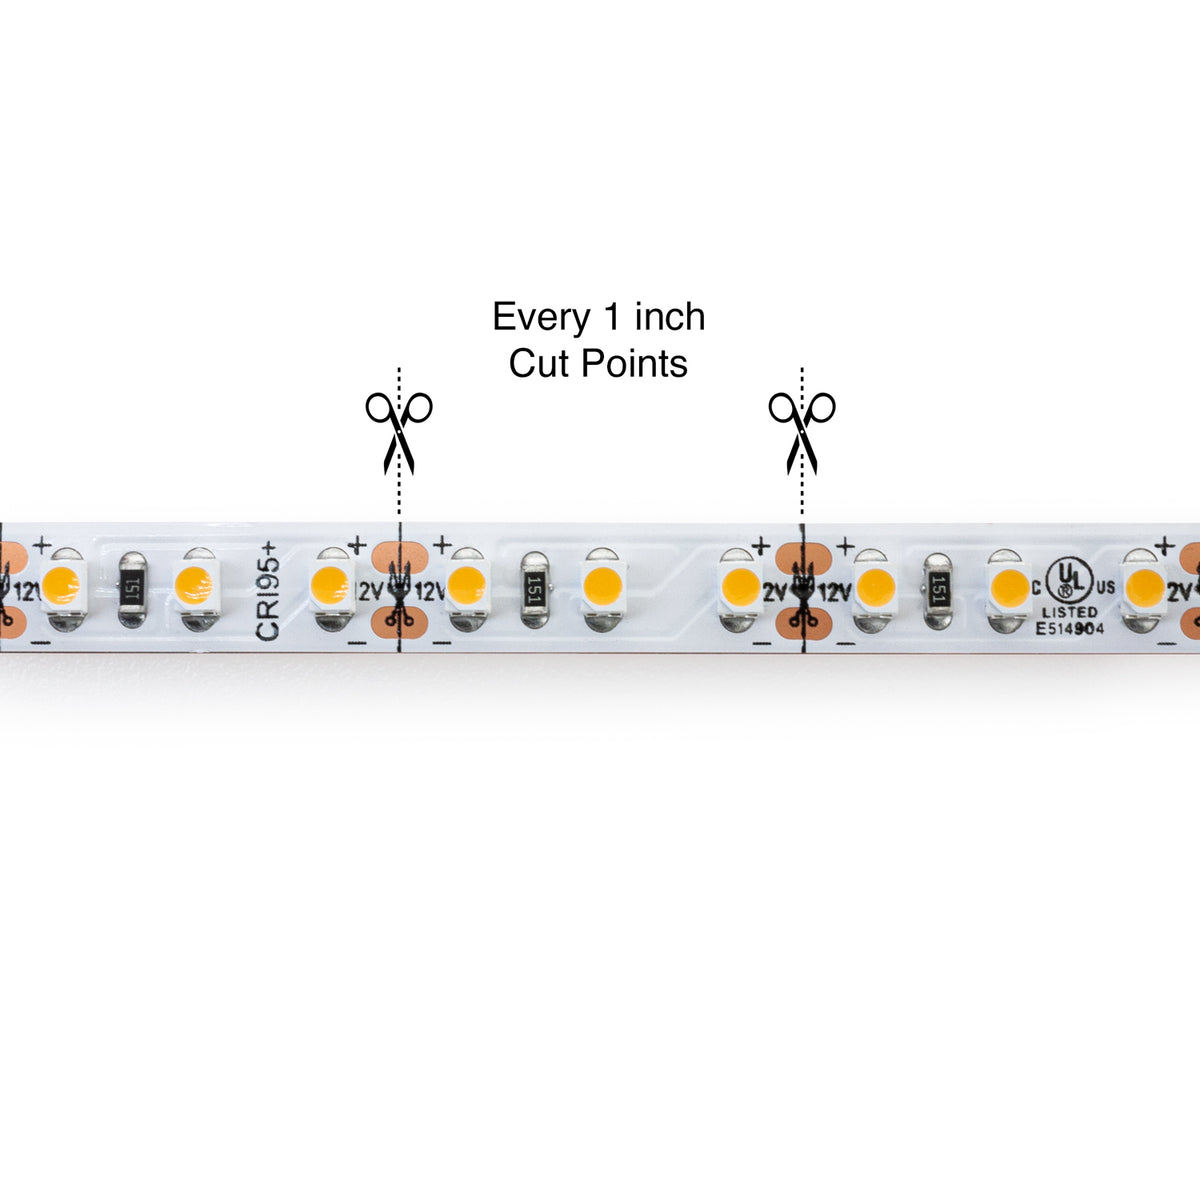 VBDFS-3528-xxxx-120-12-NS 960Lm/m(292Lm/ft) 9W/m(3W/ft) CCT(2.7K, 3K, 3.5K, 4K, 5K) led strip, led ribbon veroboard